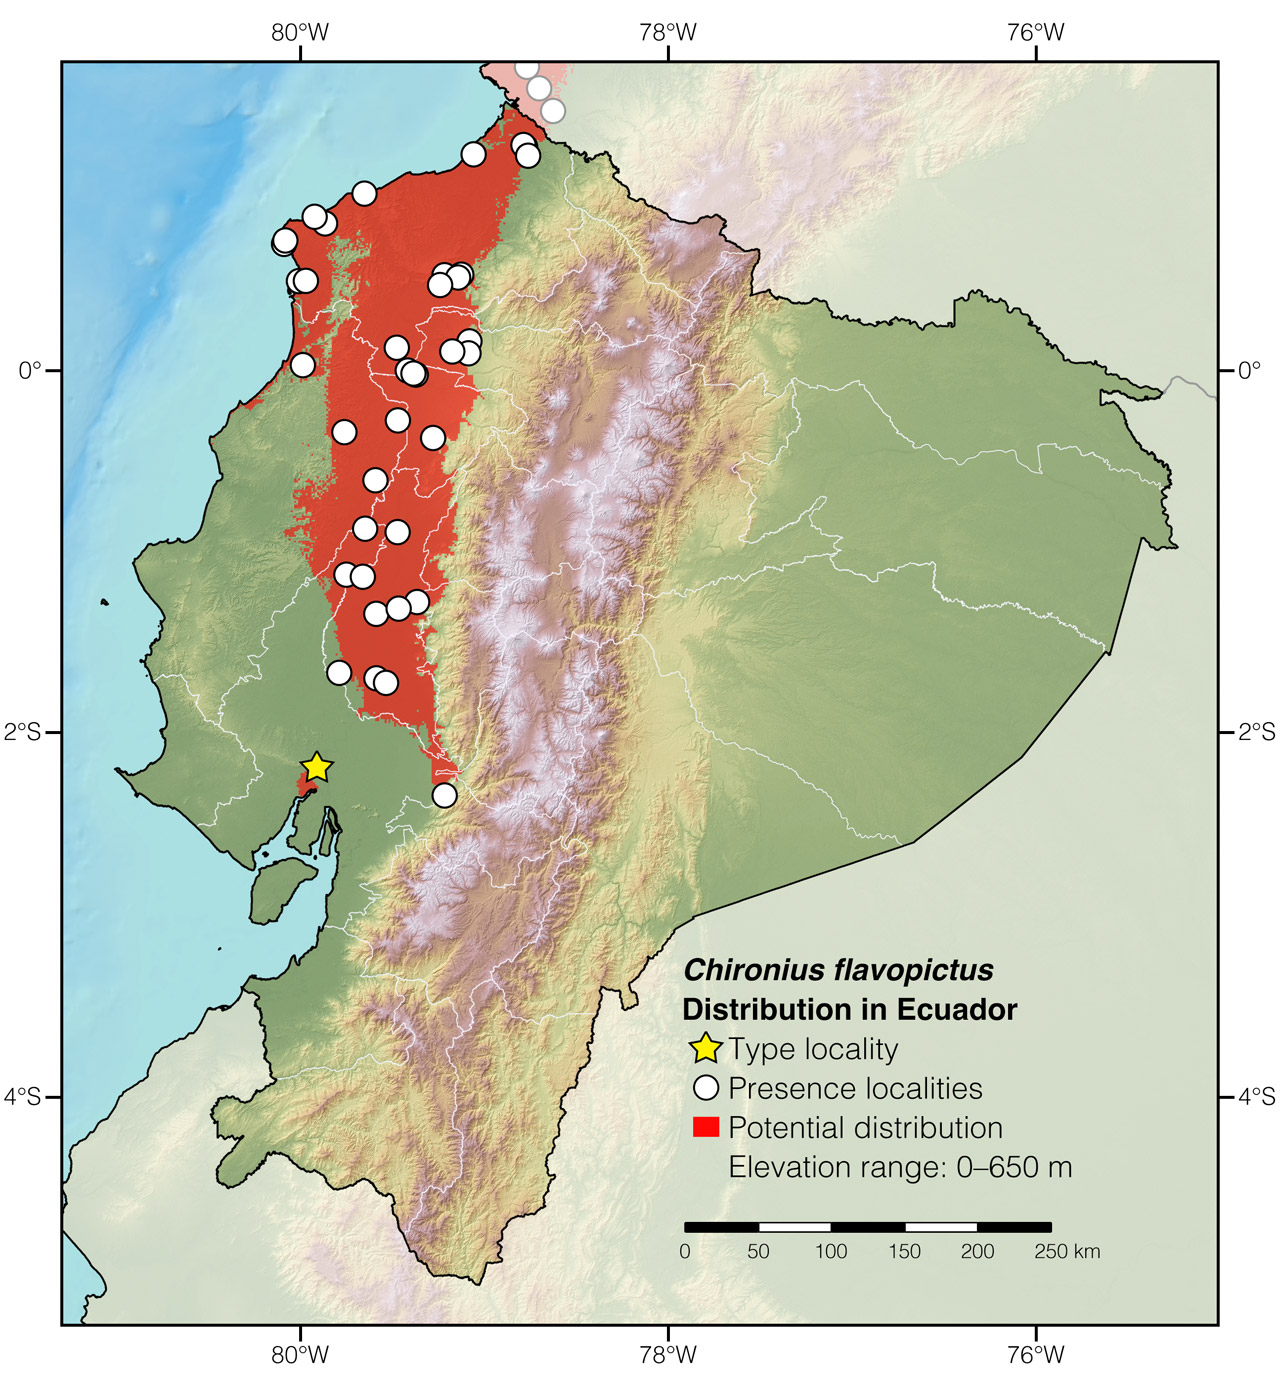 Distribution of Chironius flavopictus in Ecuador